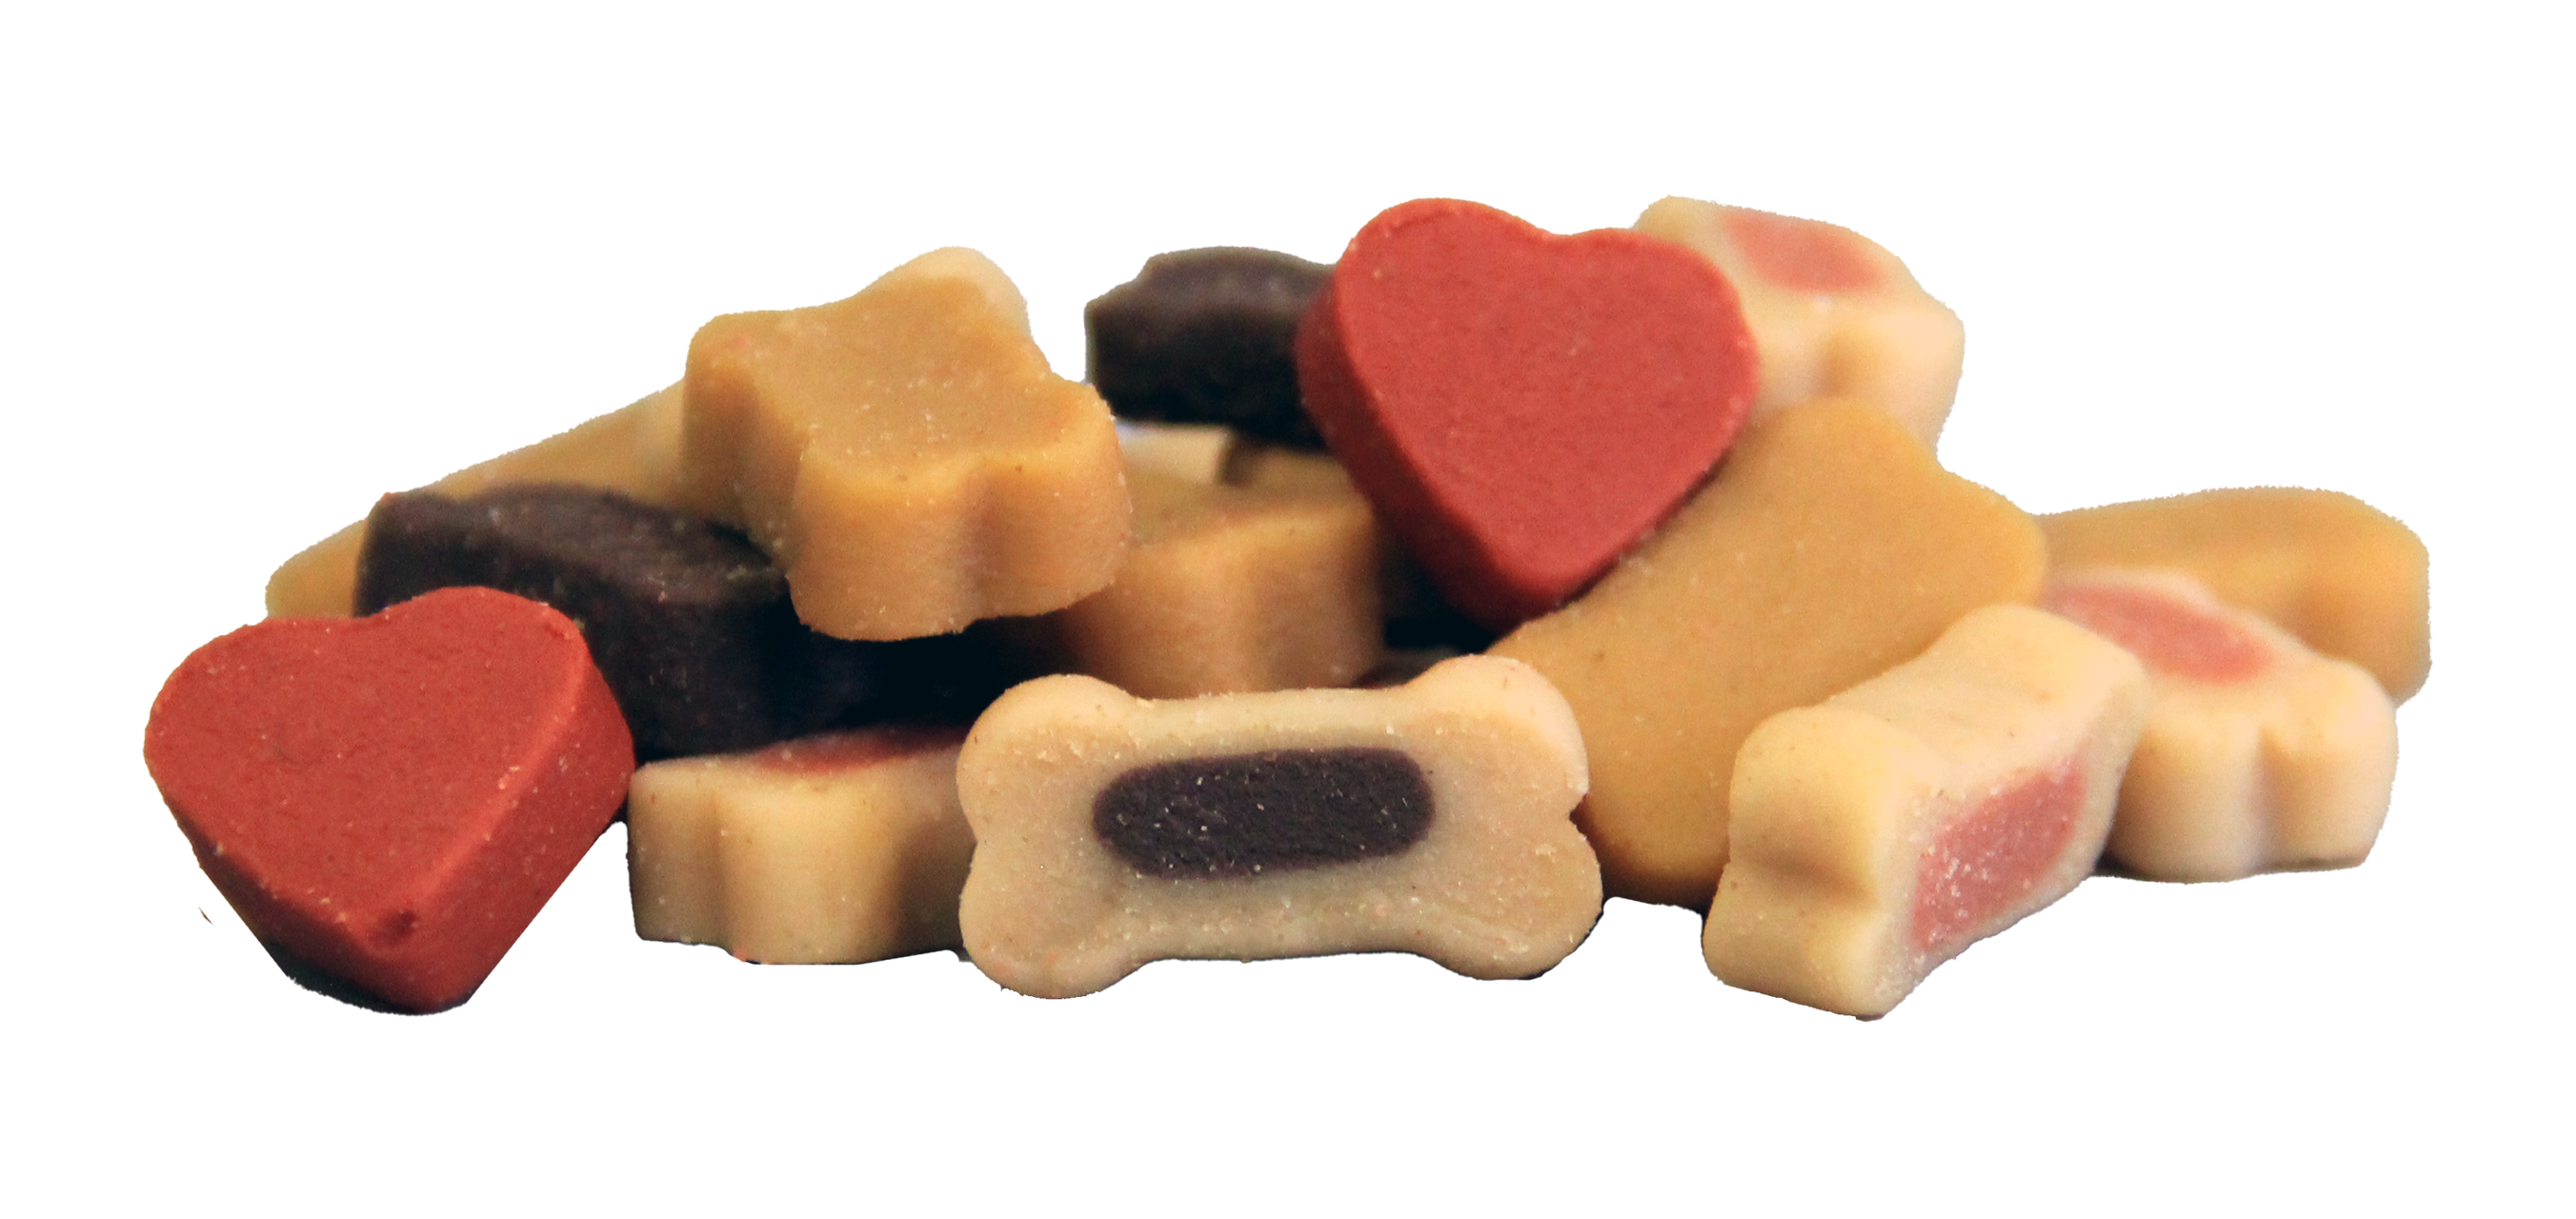 Zachte hondensnoepjes in de vorm van hartjes, botjes en botjes gevuld met zalm of lam.